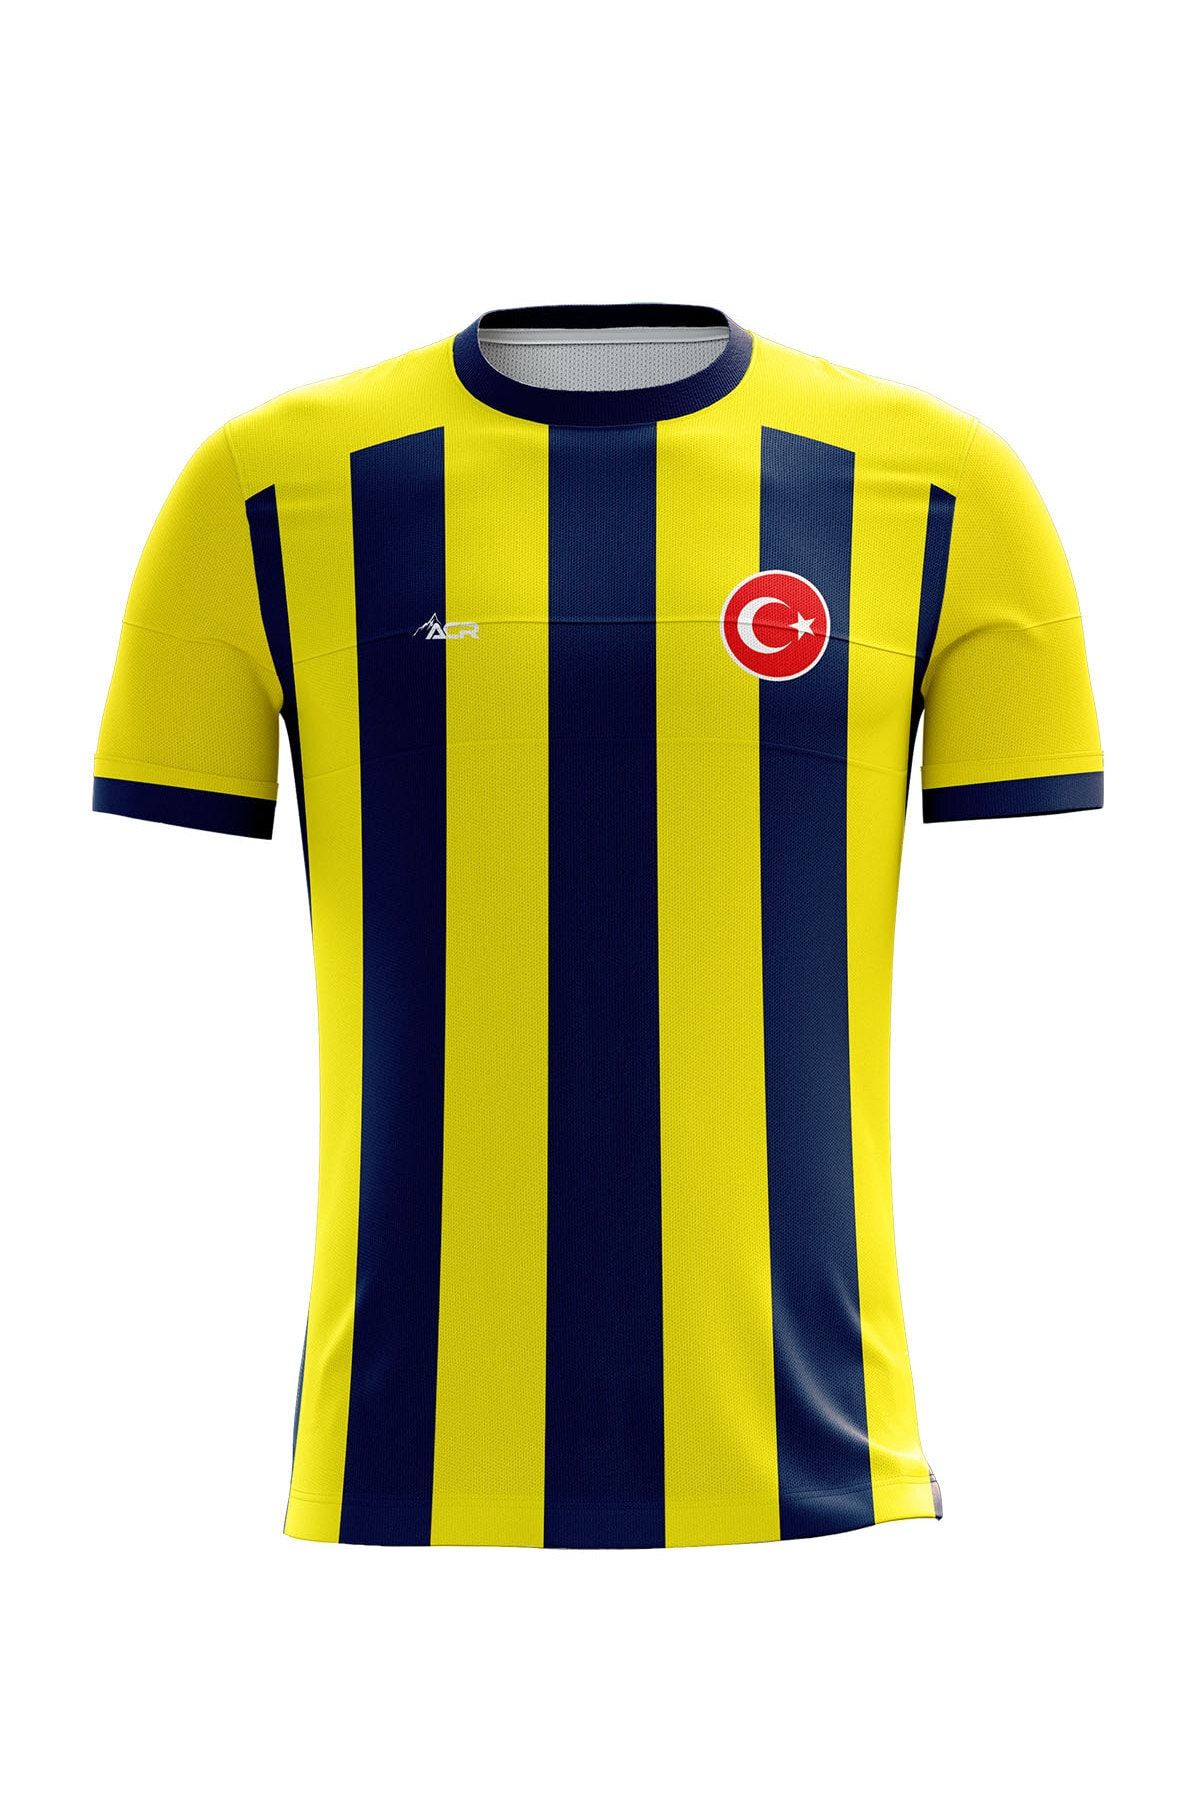 ACR Giyim Tekstil Forma Baskı Kişiye Özel Futbol Forması Tek Üst Sarı Lacivert 2020